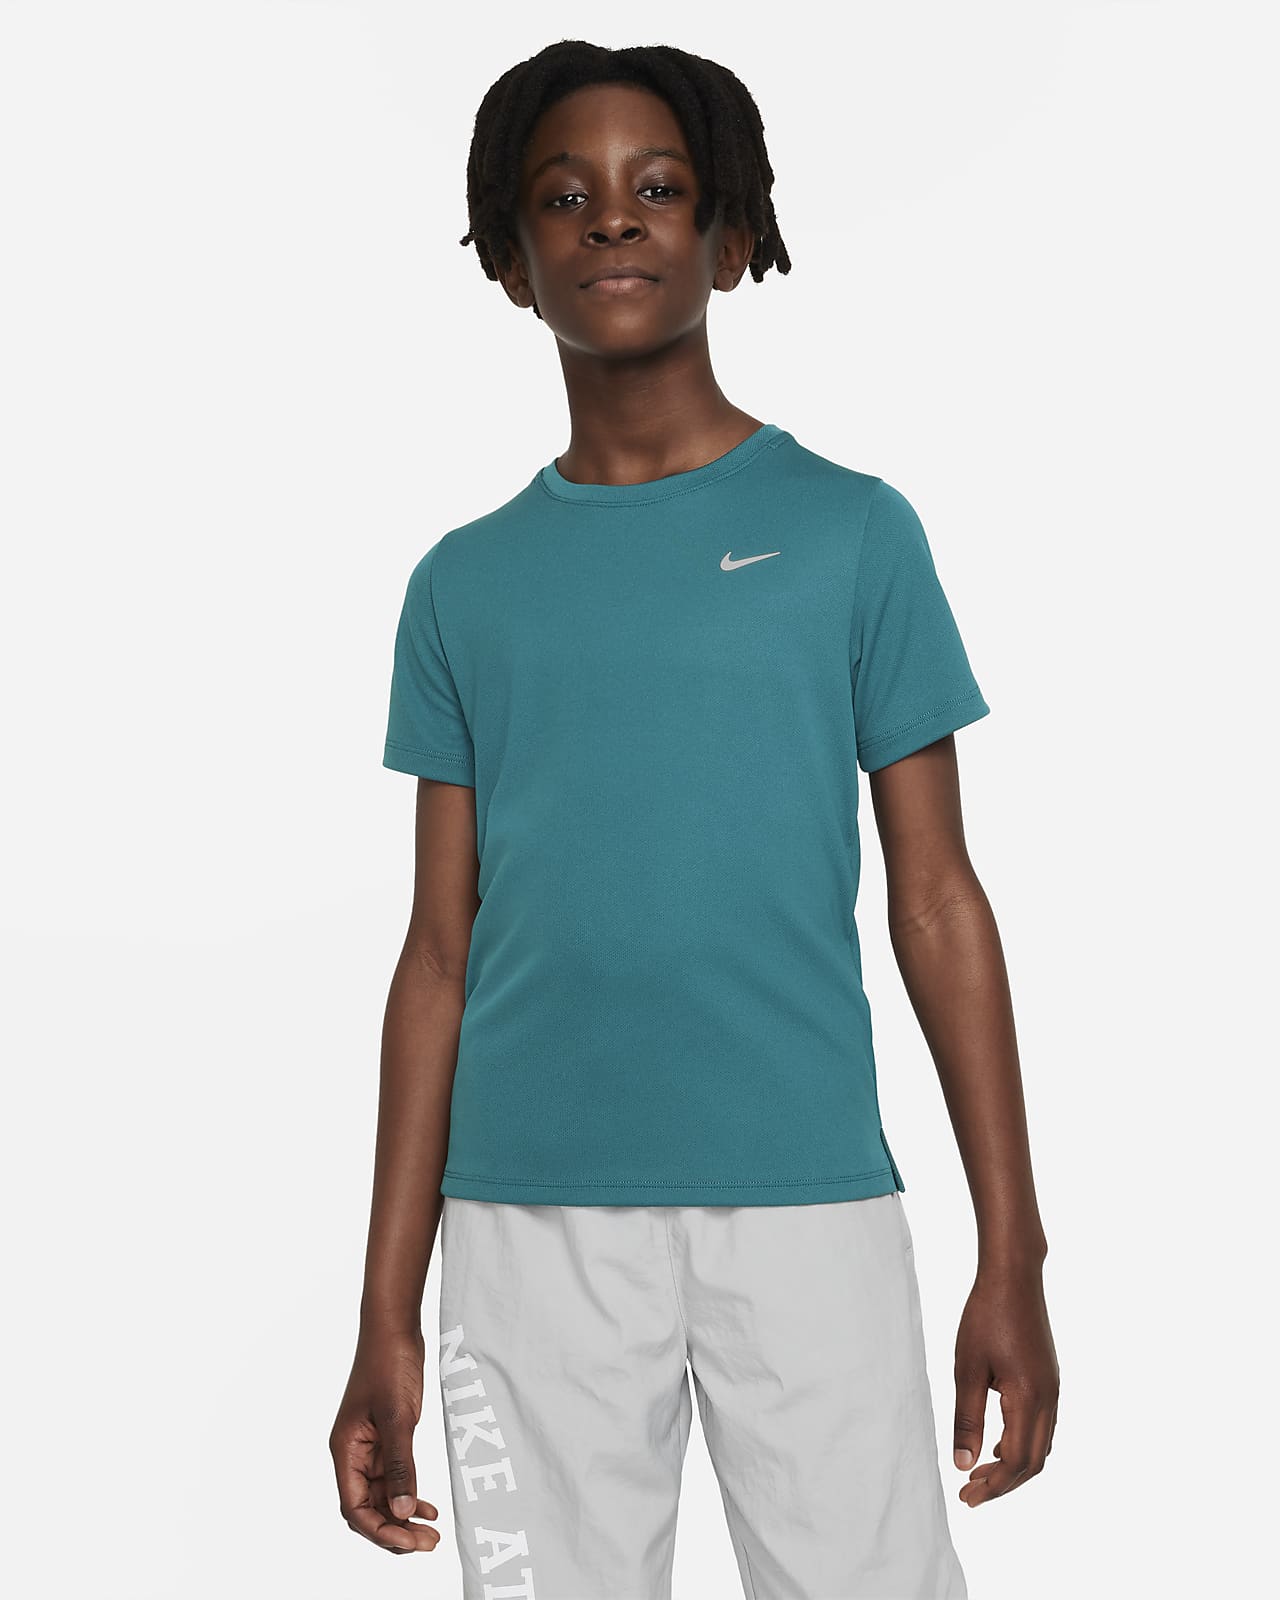 เสื้อเทรนนิ่งแขนสั้นเด็กโต Nike Dri-FIT Miler (ชาย)